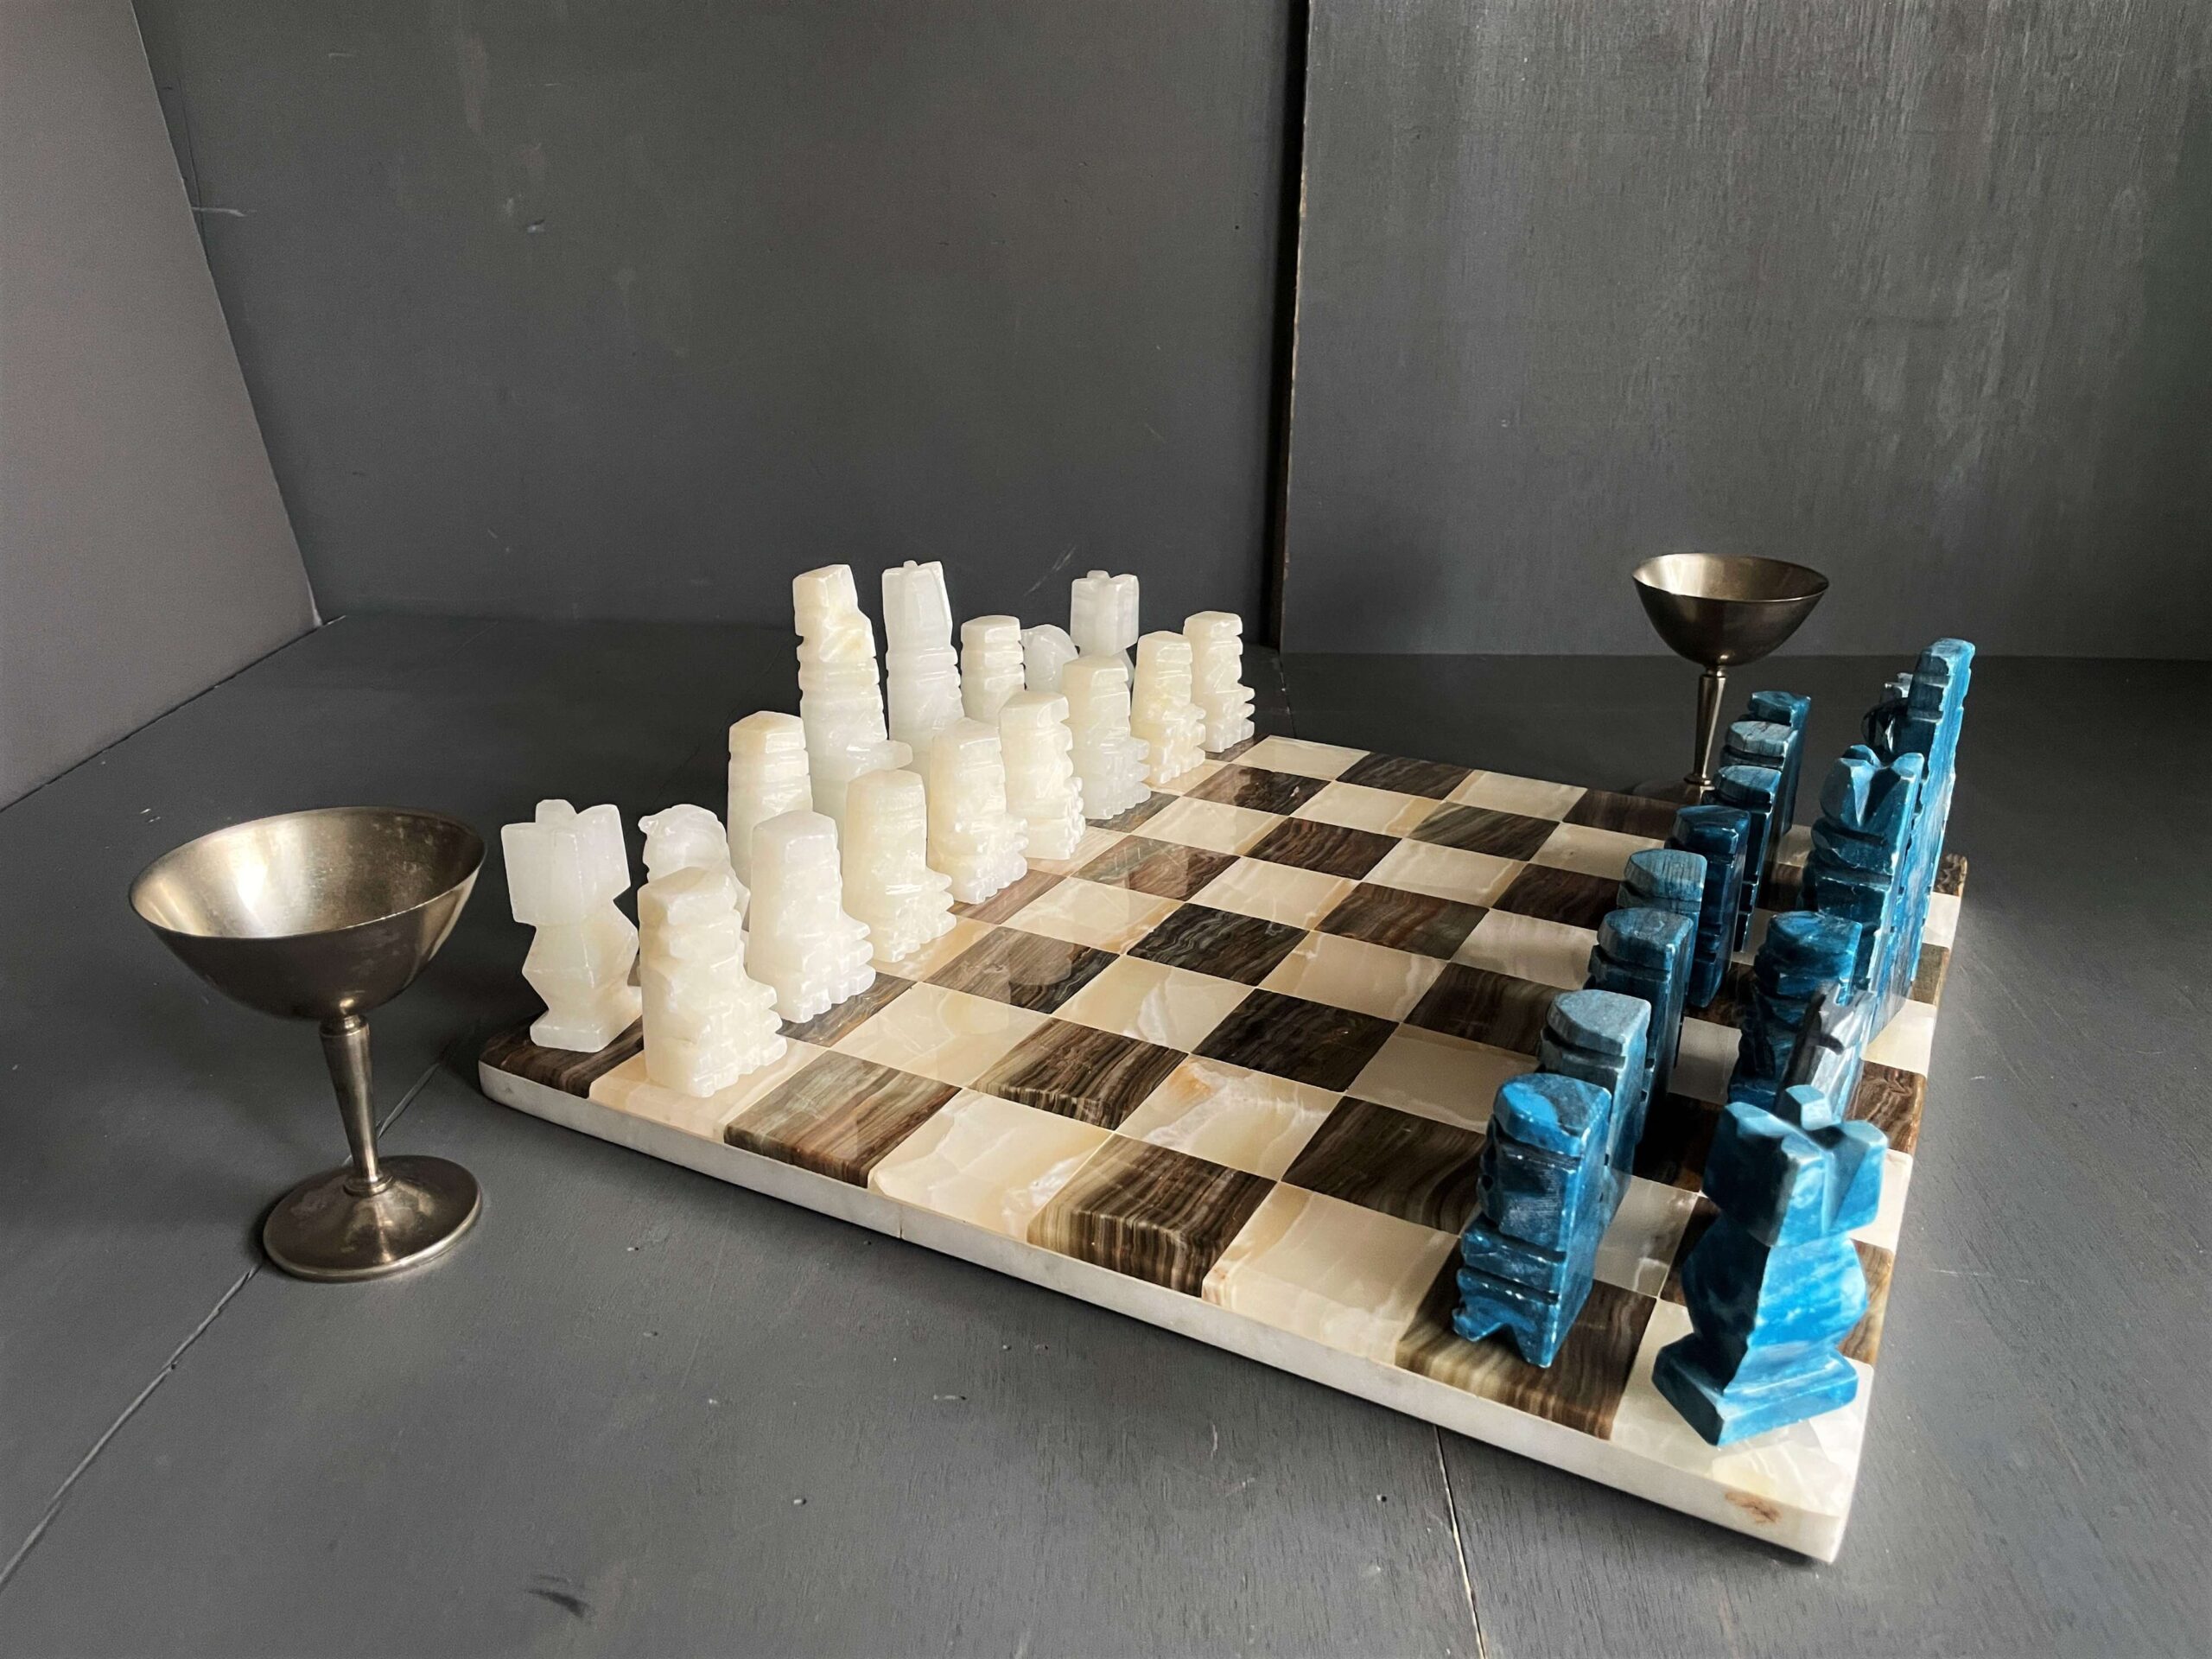 チェス盤 チェスセット 大理石 ブラック ホワイト マーブル ヴィンテージ